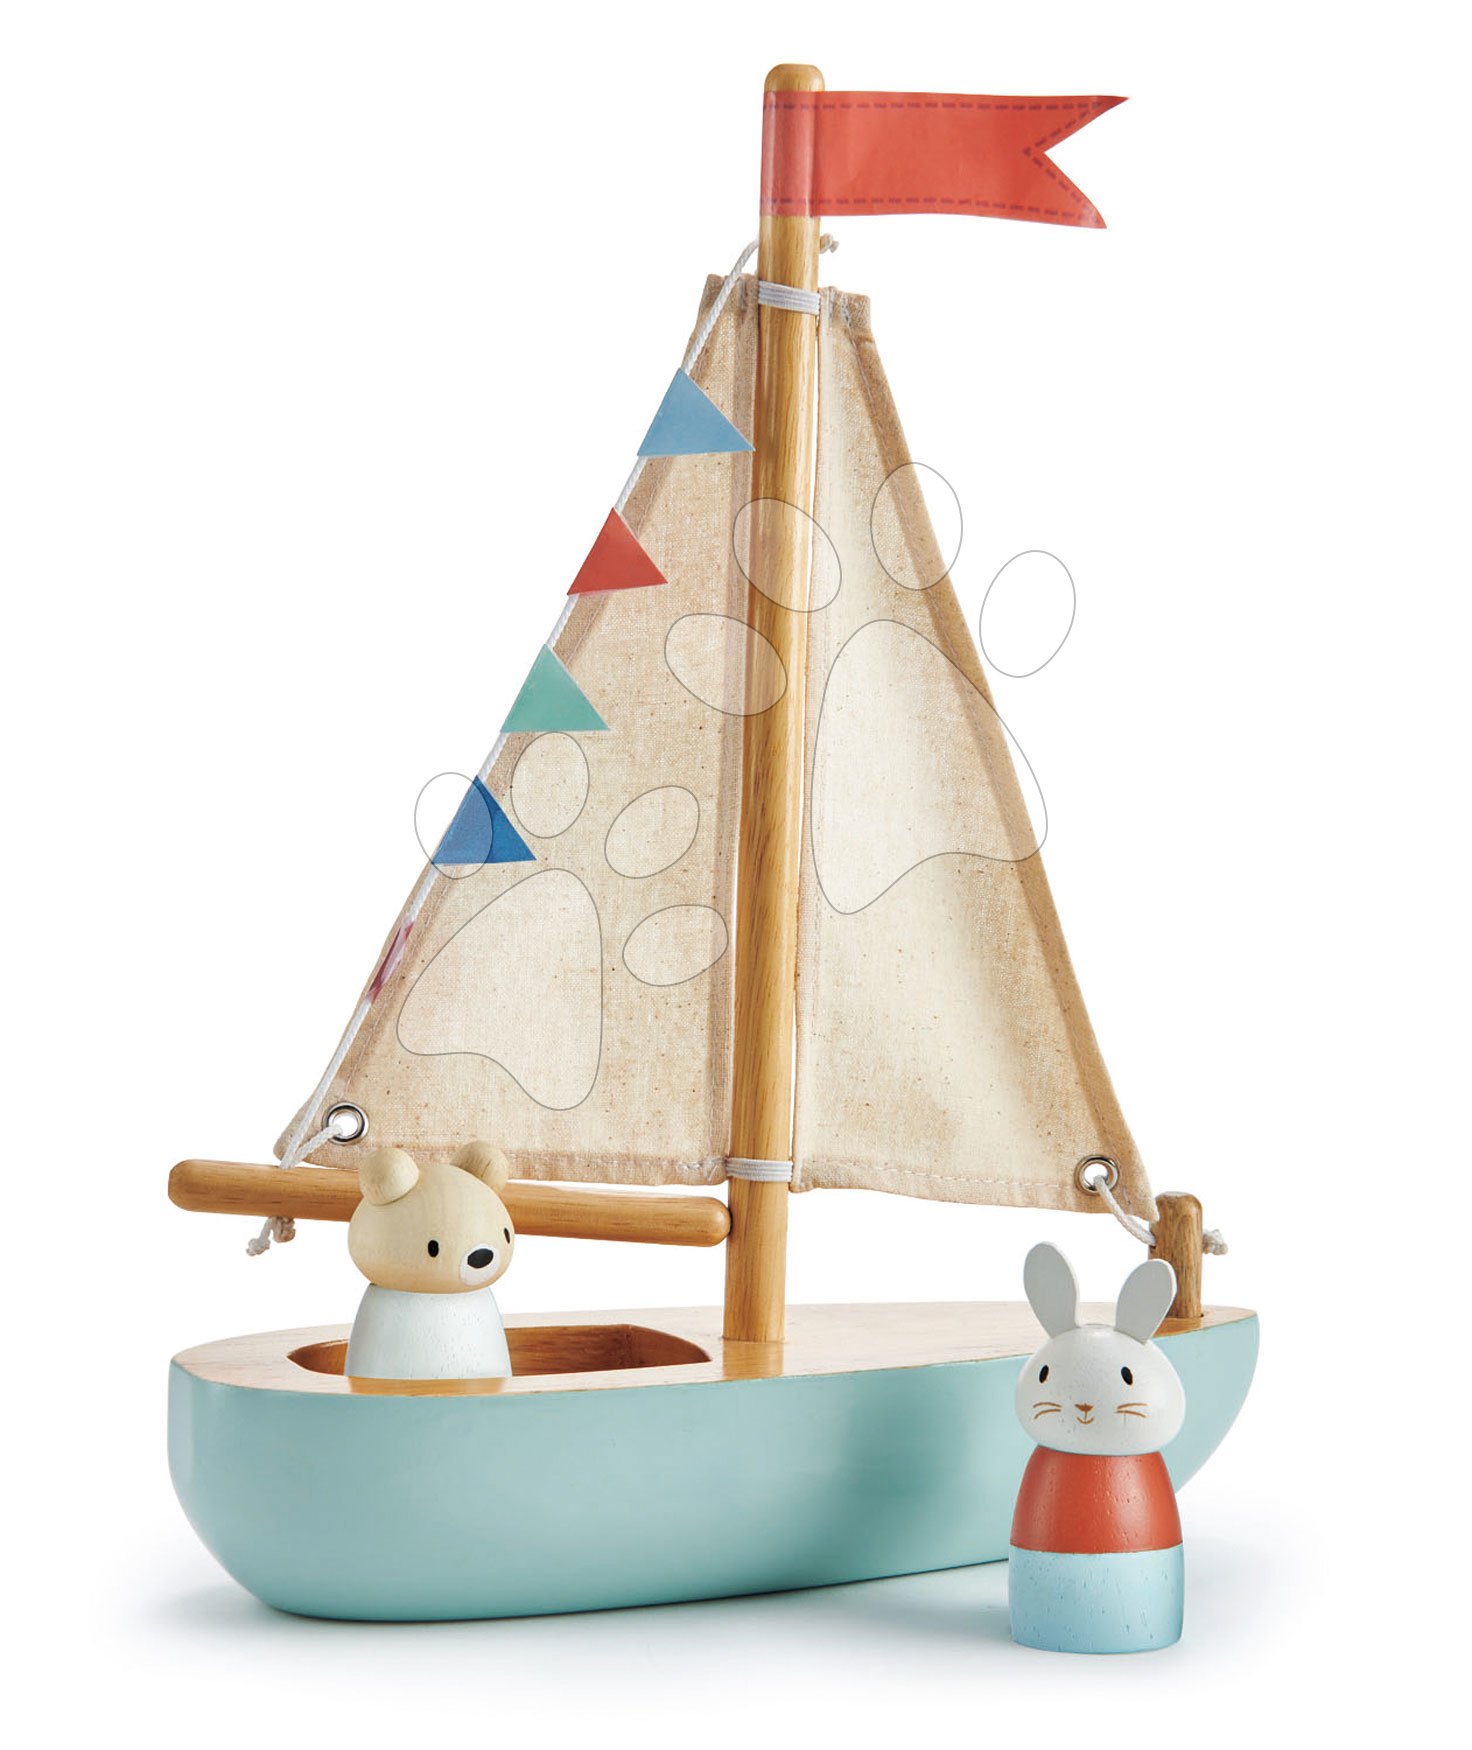 Drevená plachetnica Sailaway Boat Tender Leaf Toys s dvoma plachtami a zajačik s medvedíkom